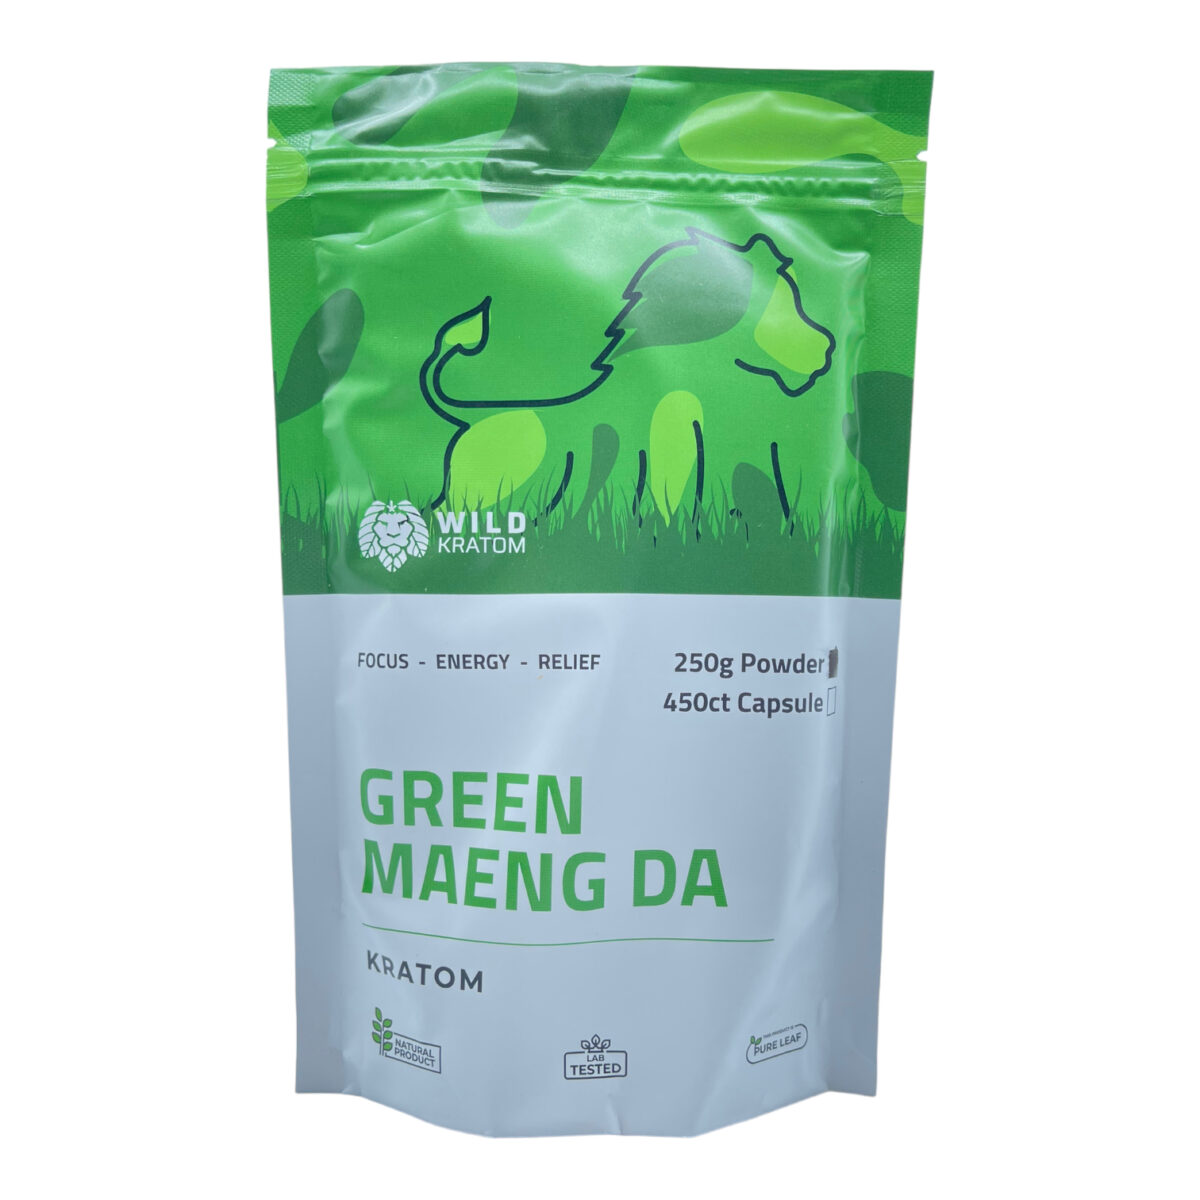 Wild Kratom Green Maeng Da Kratom Powder